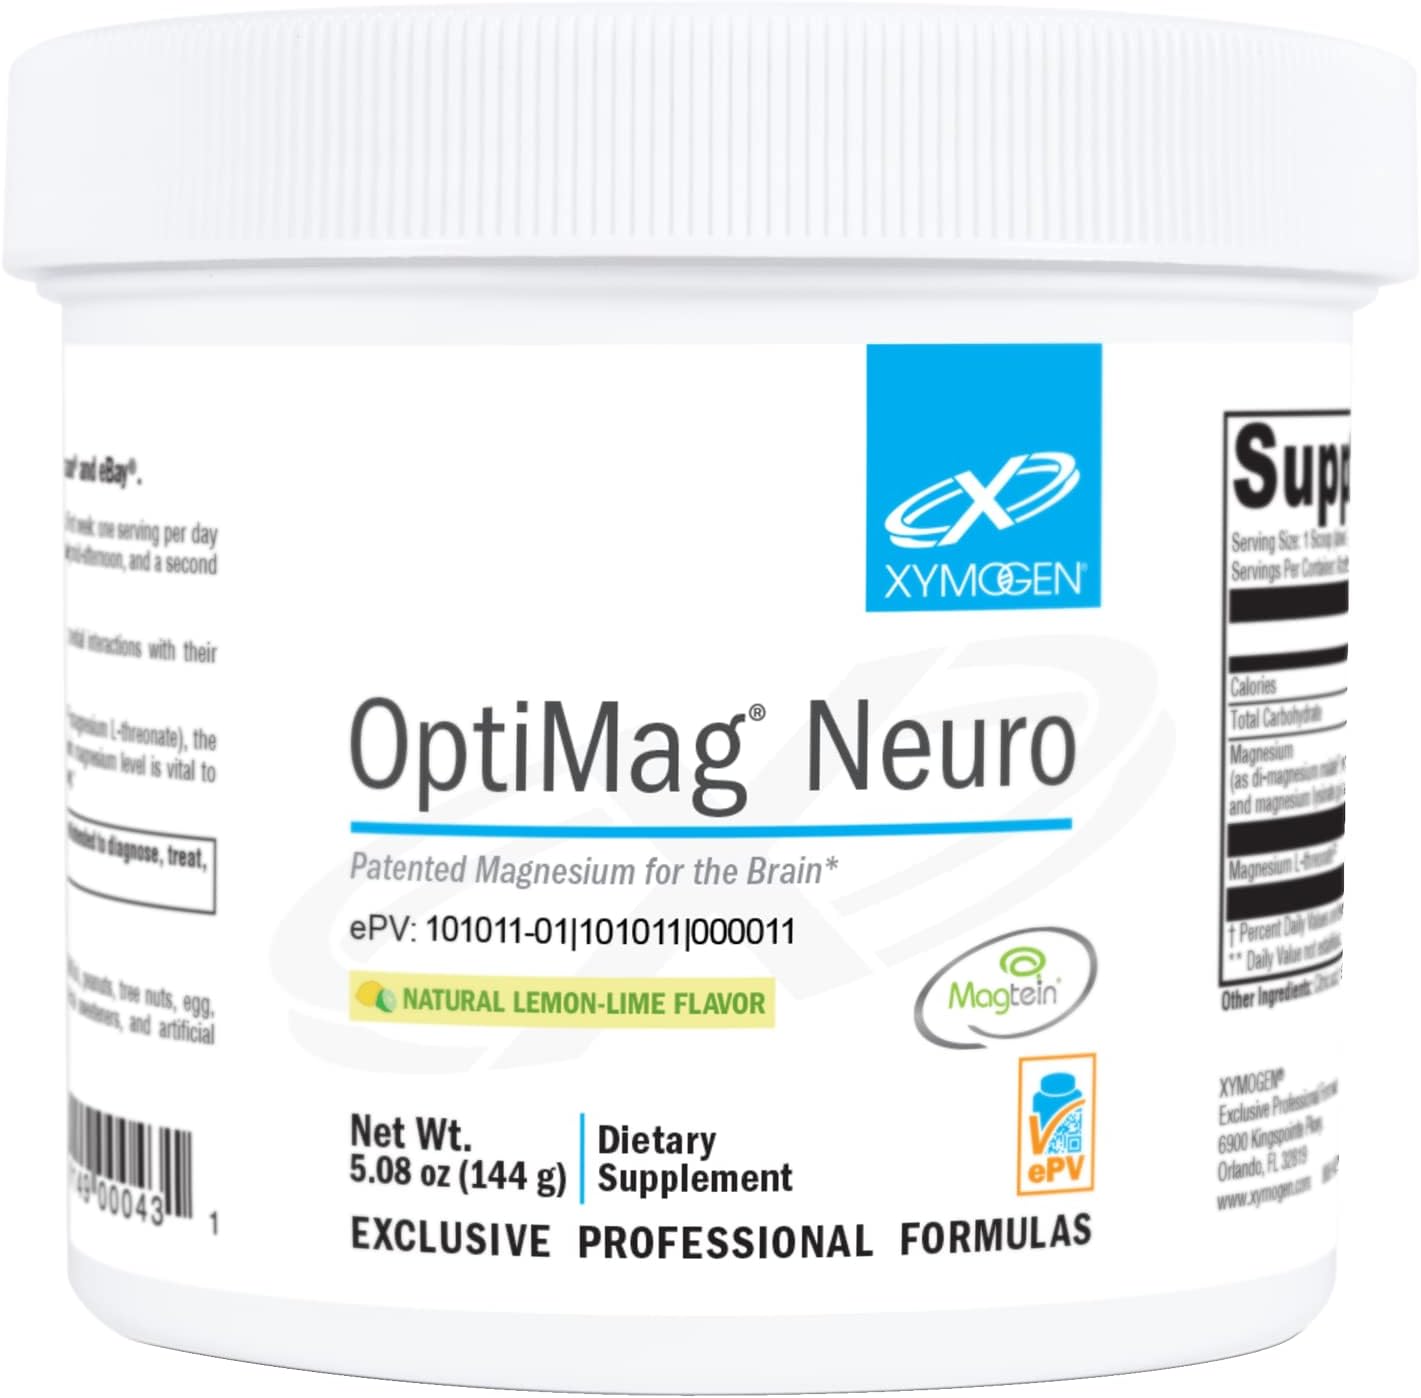 XYMOGEN OptiMag Neuro Magnesium Powder - Magnesium L-Threonate, Magnes